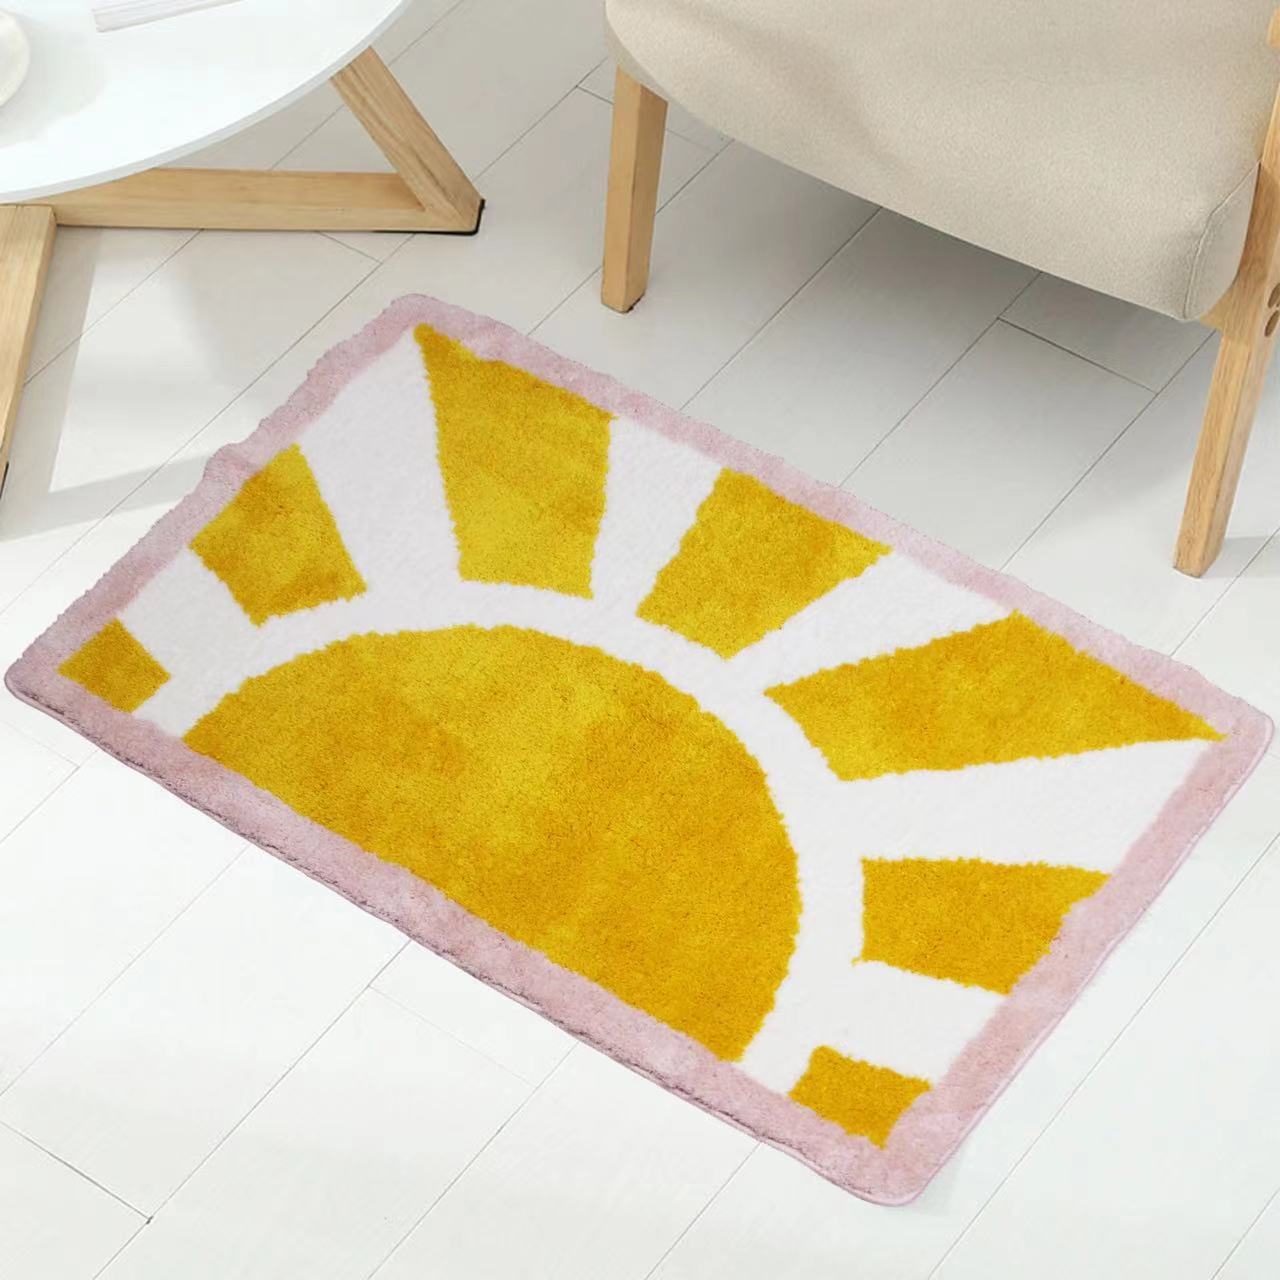 Feblilac Sun Rise Bathroom Mat, Yellow Sunshine Bath Mat